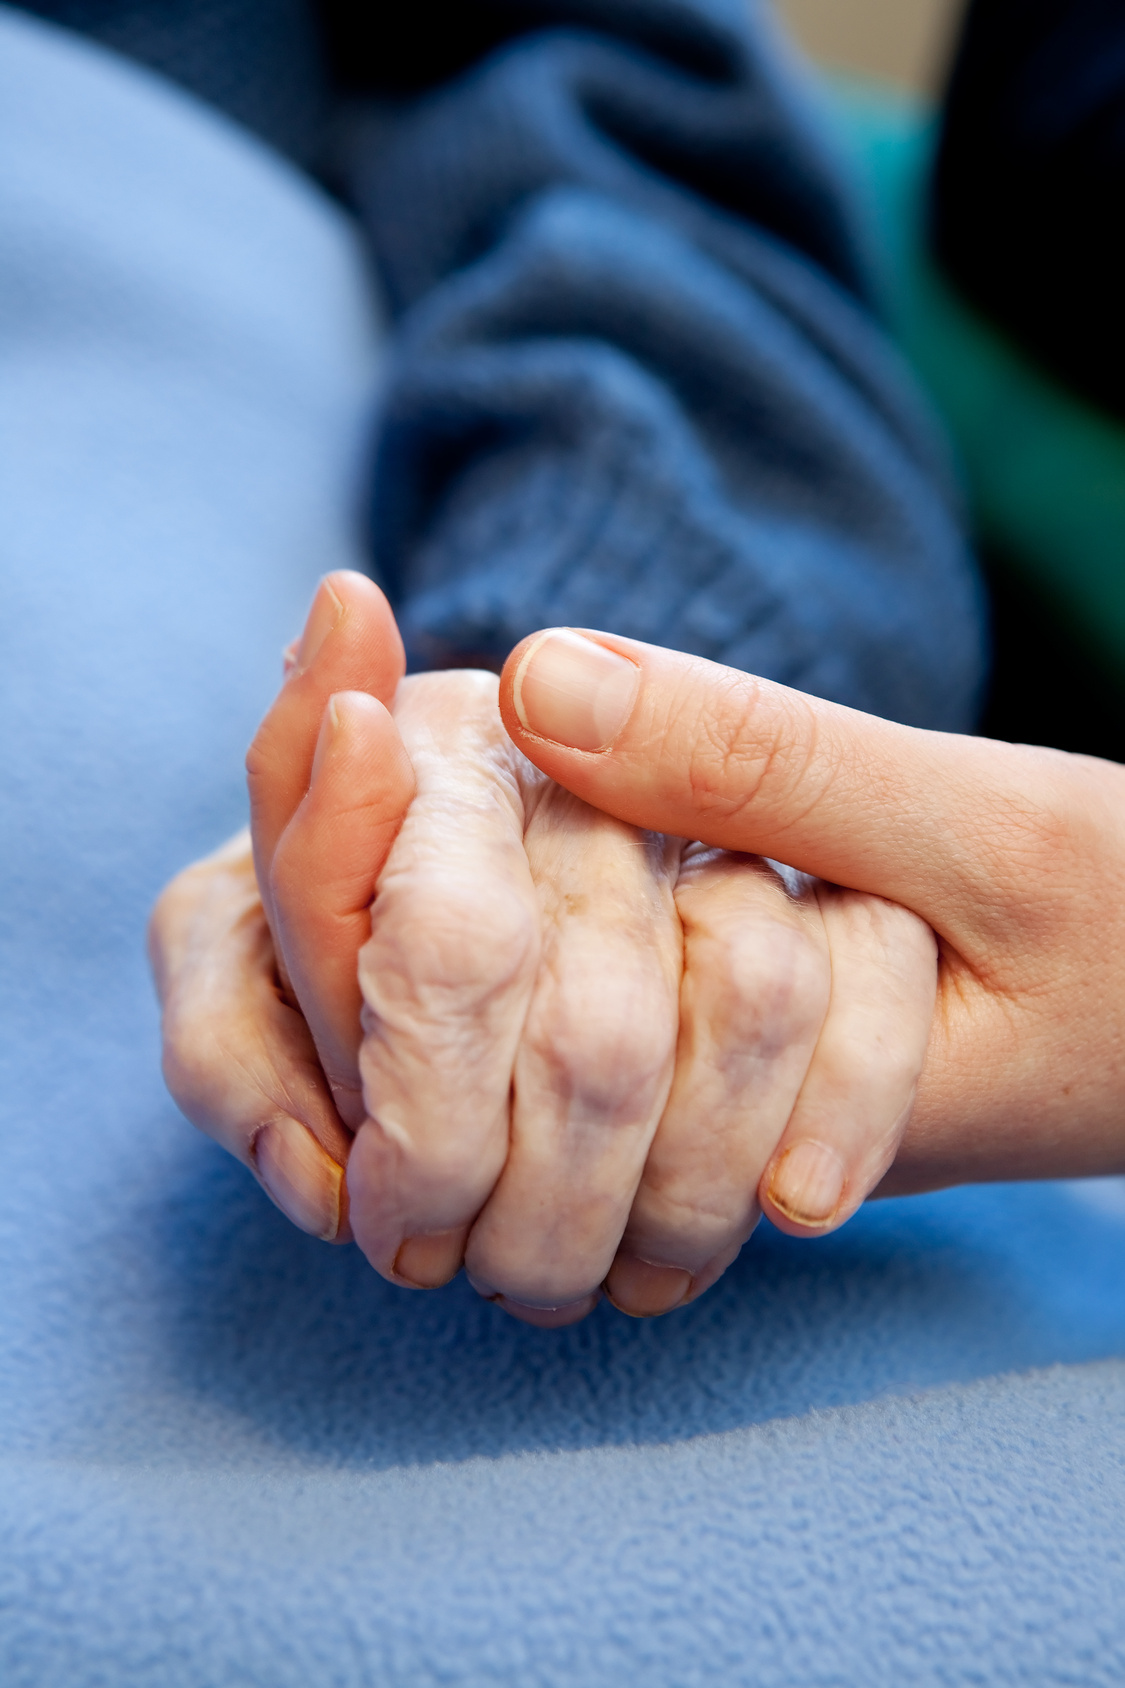 Services d’aide et de soins infirmiers à domicile : 51% sont confrontés à des cas de maltraitance ou de négligence envers les personnes âgées souffrant de   troubles cognitifs !